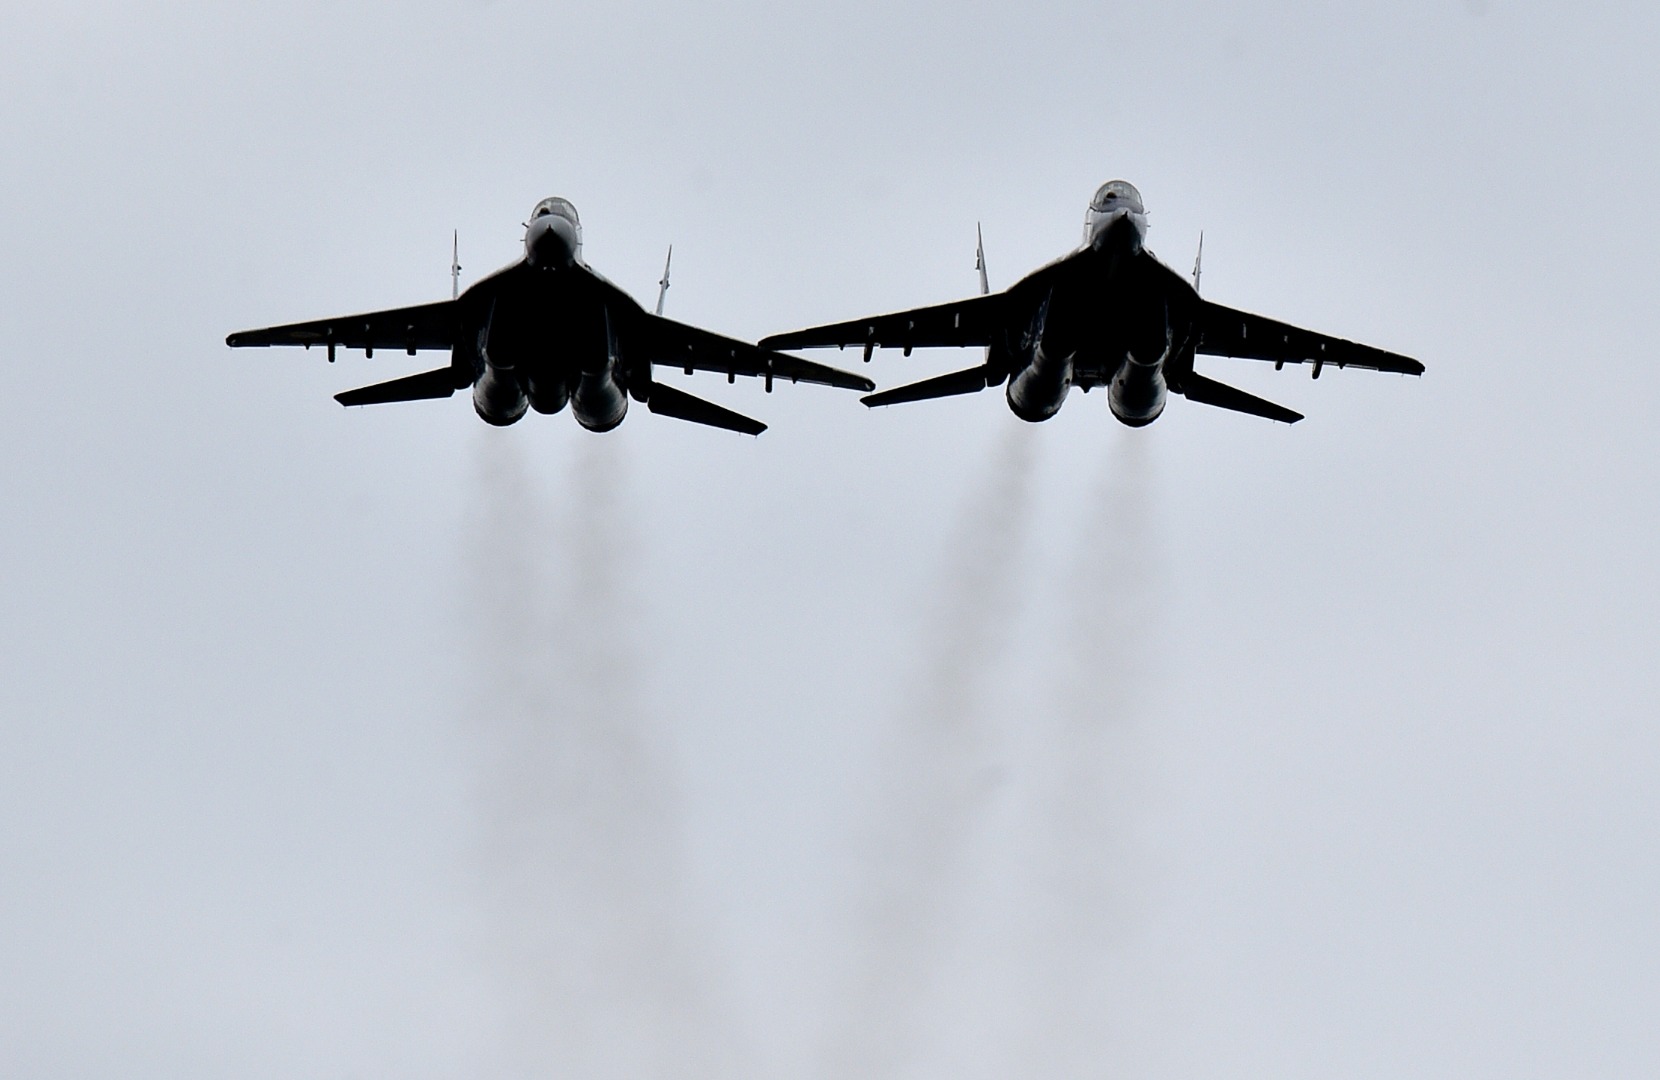 İngiliz ve Alman jetlerinden, Rus savaş uçakları ve casus uçağına engelleme